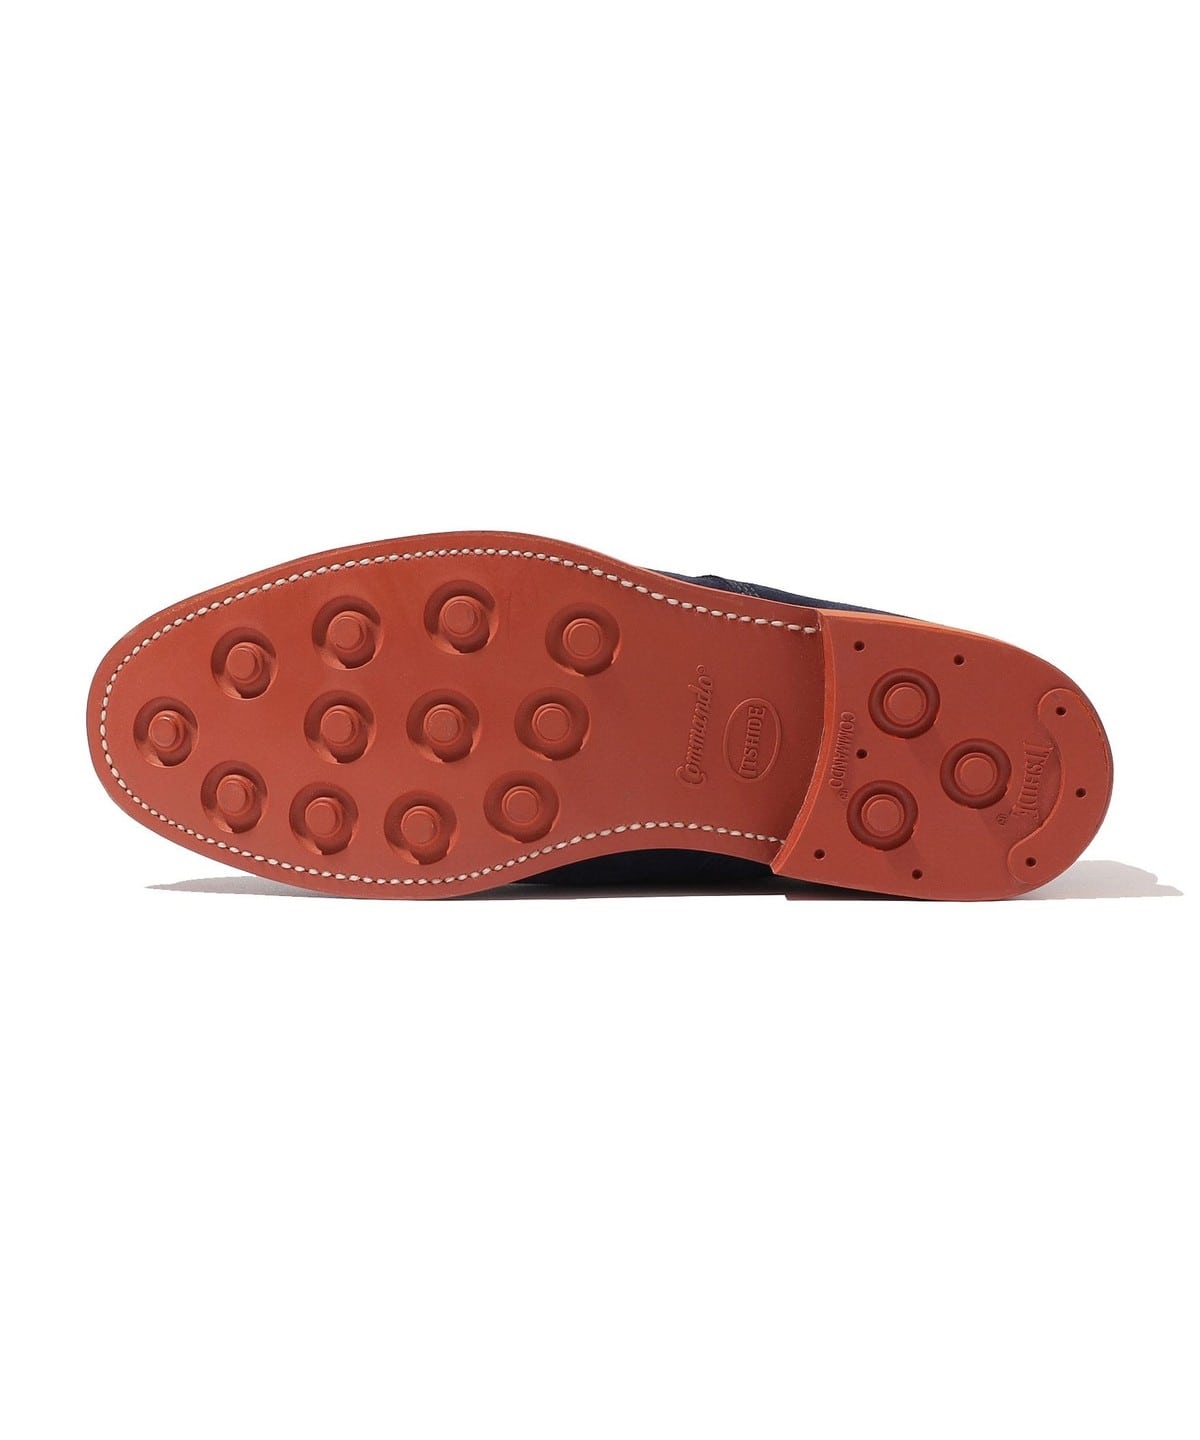 [Southwick Exclusive] SANDERS: Navy Suede Plain Toe Shoes